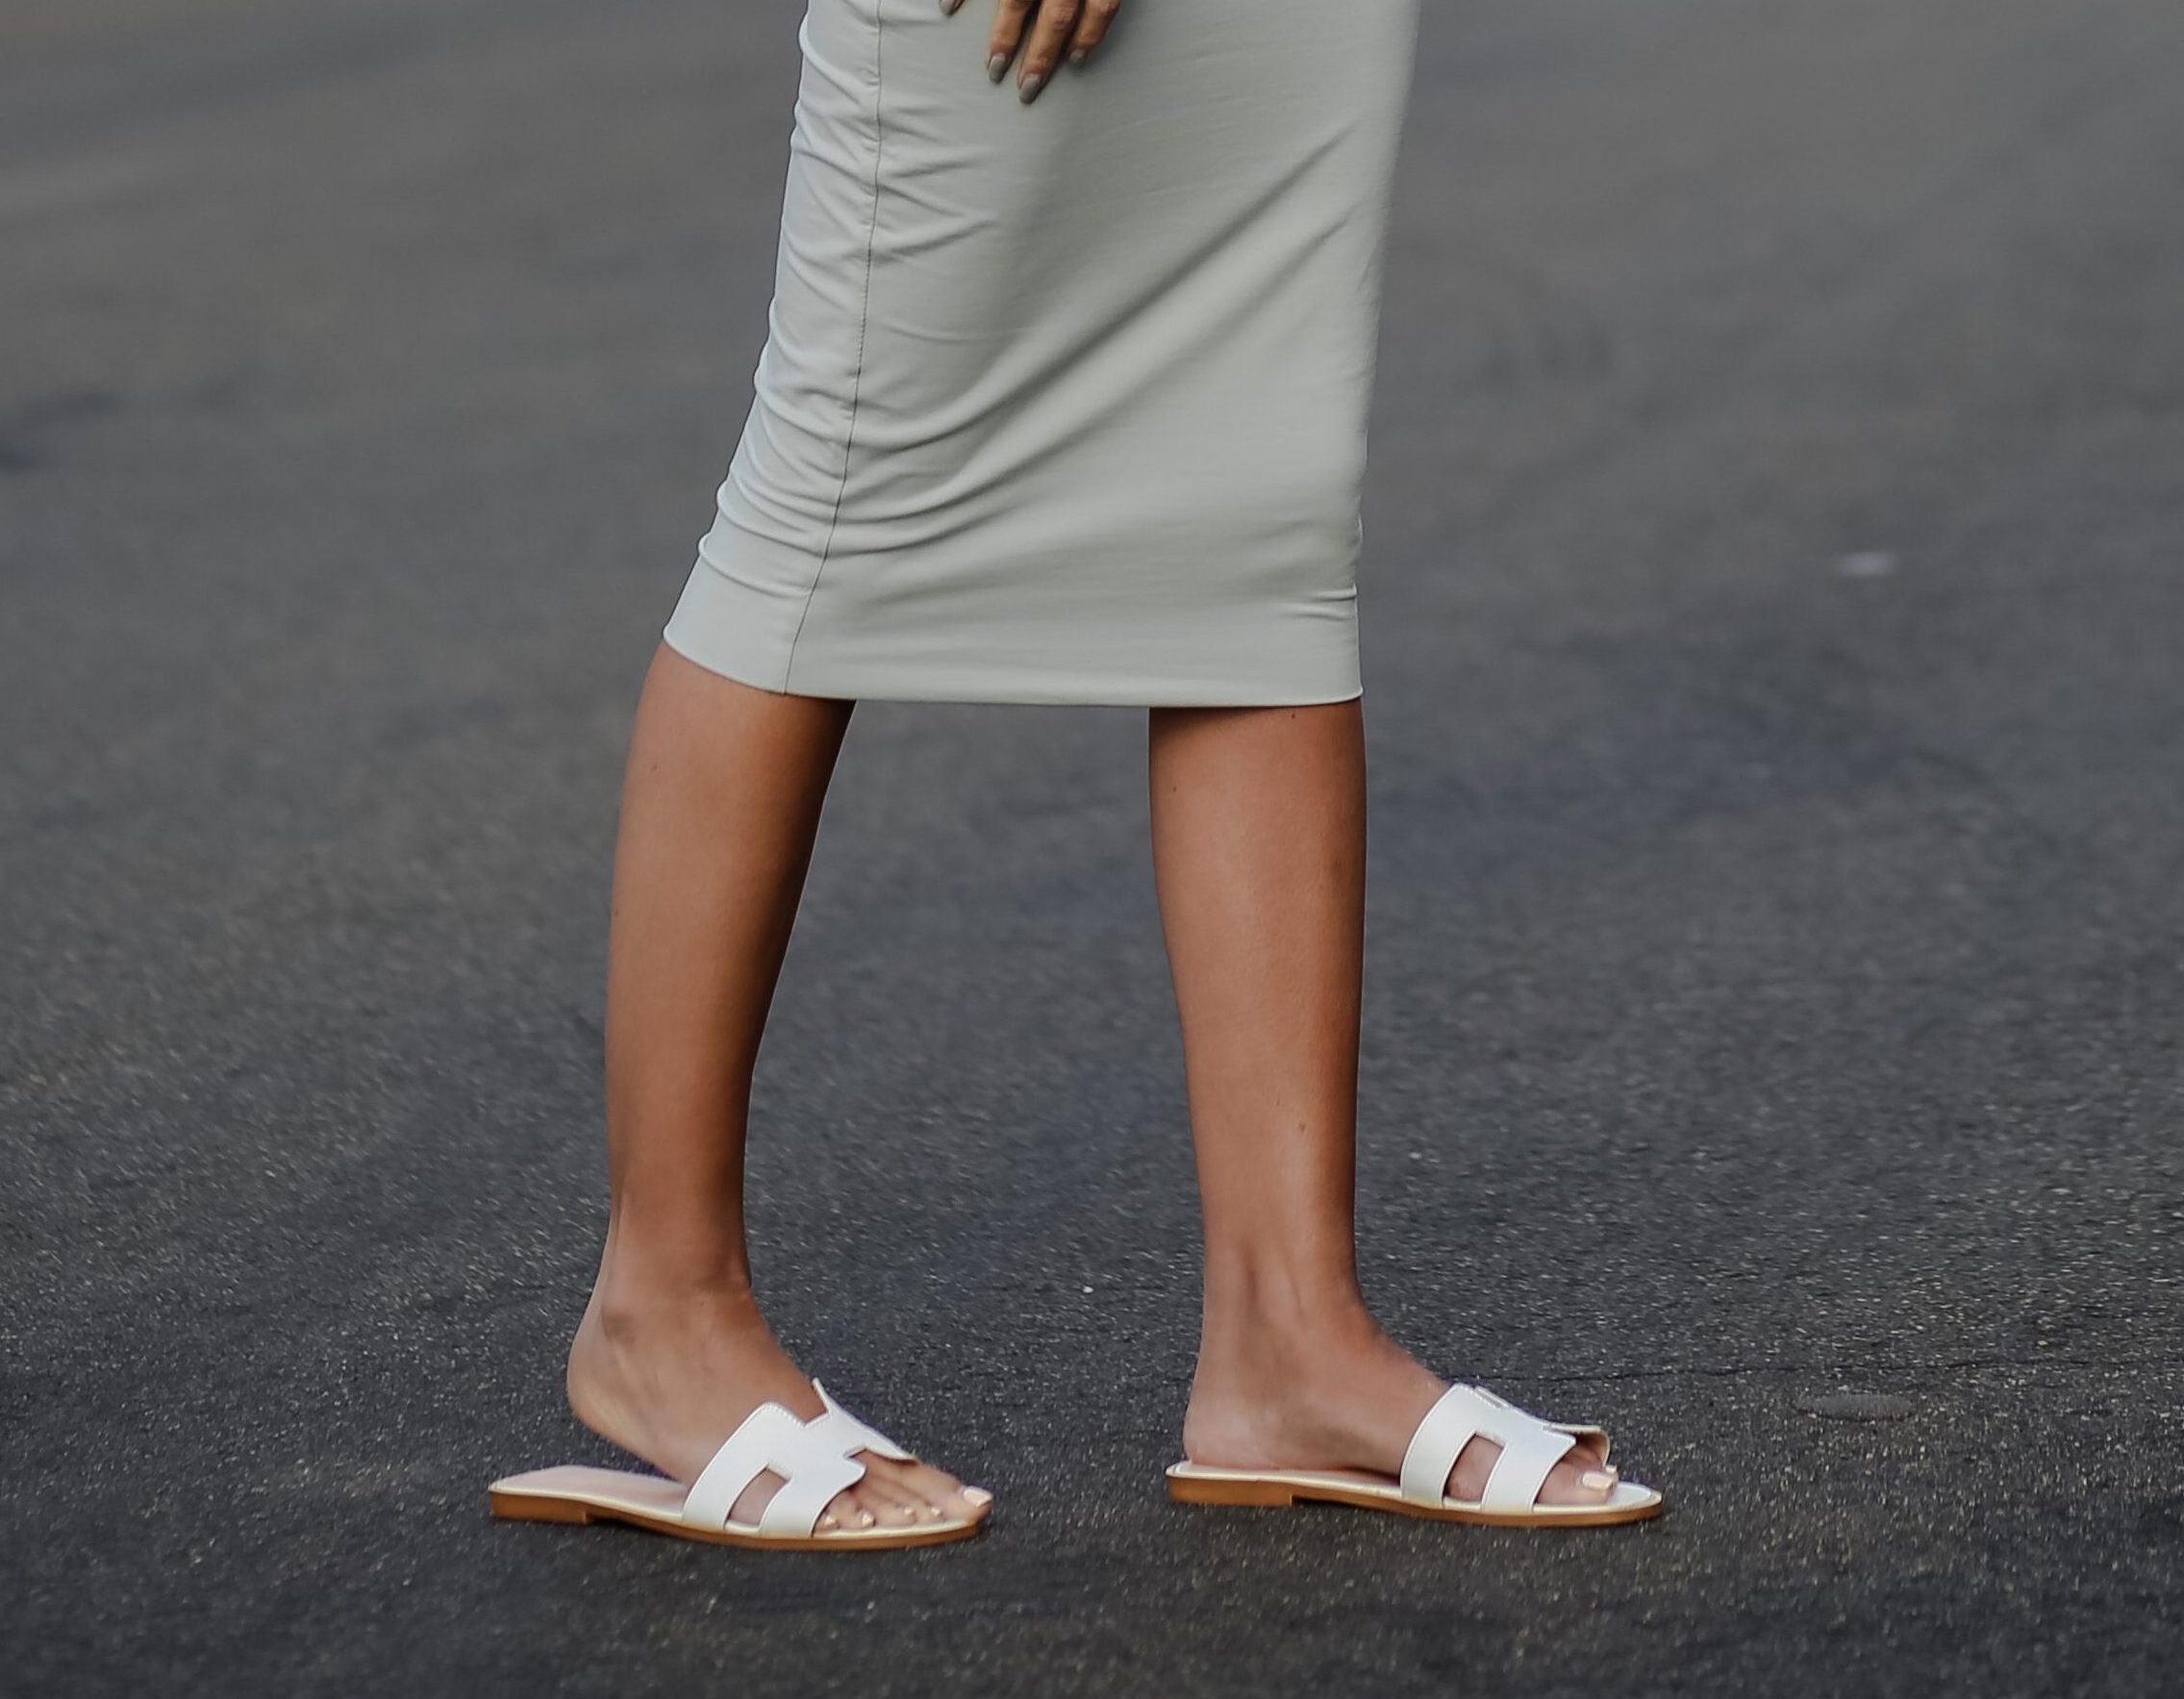 Hermes Oran look-alike sandals